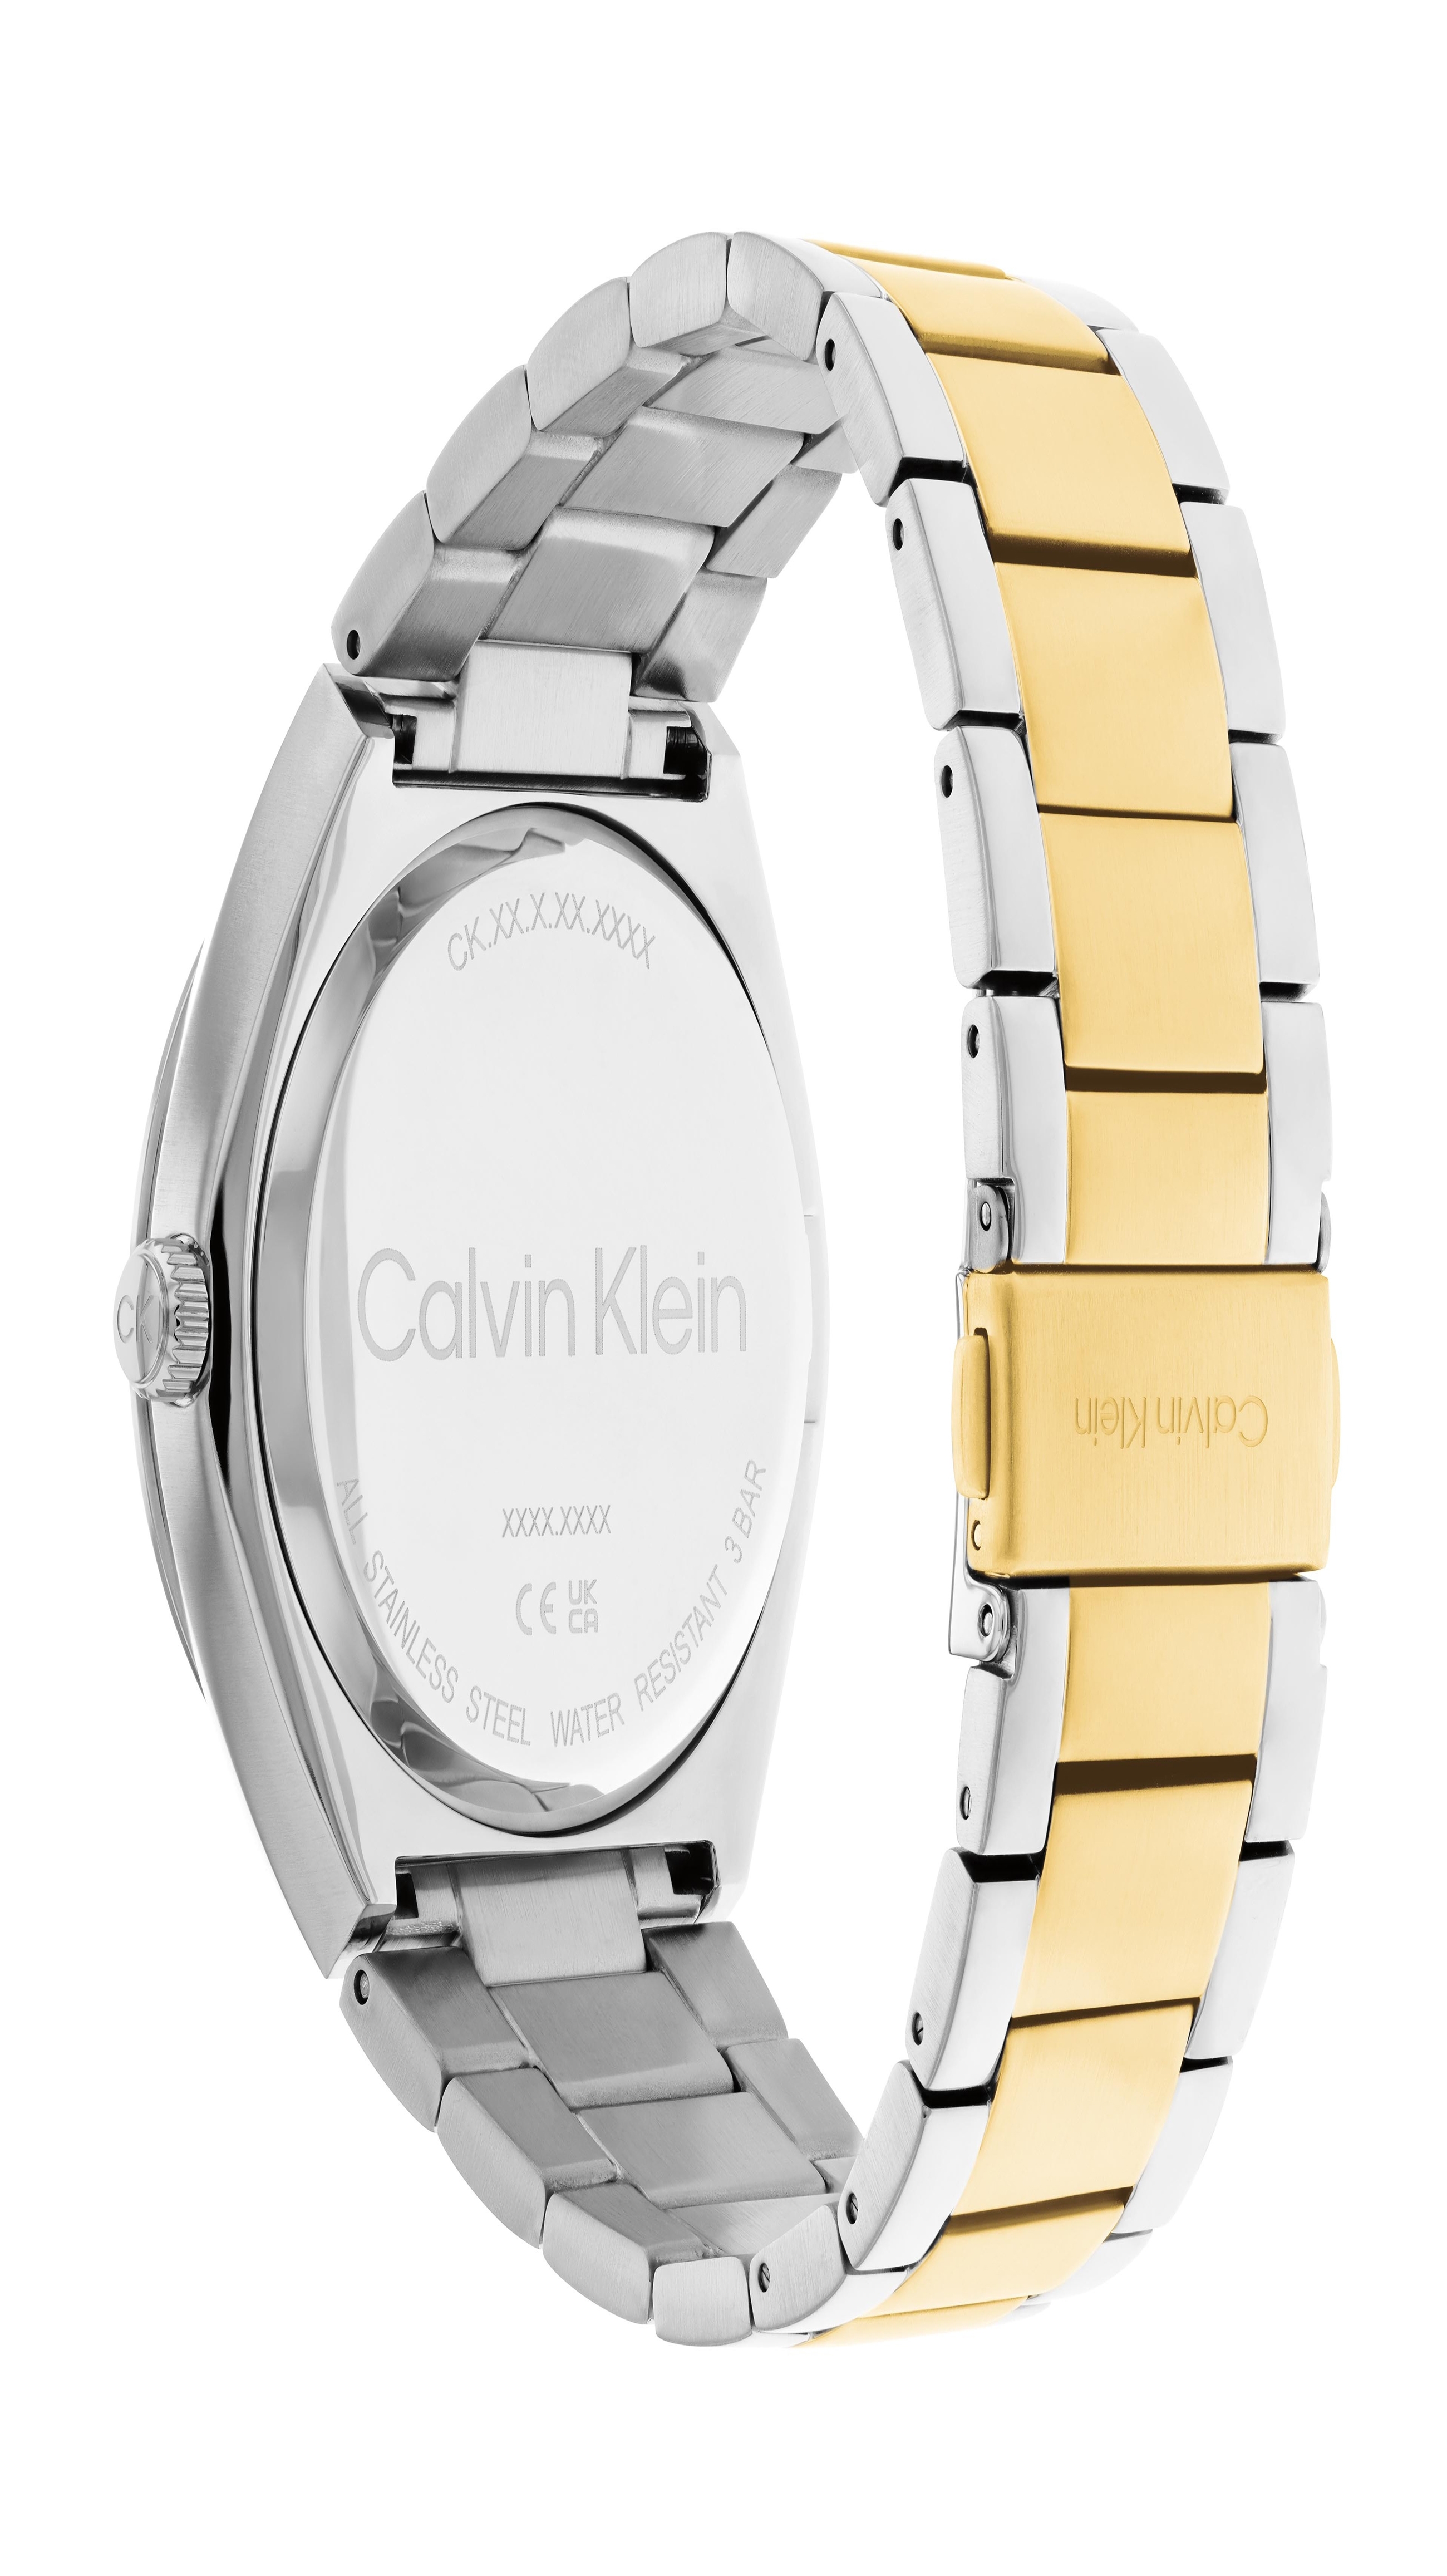 Calvin Klein CALVIN KLEIN MENS QUARTZ STAINLESS STEEL WATCH - 25200198